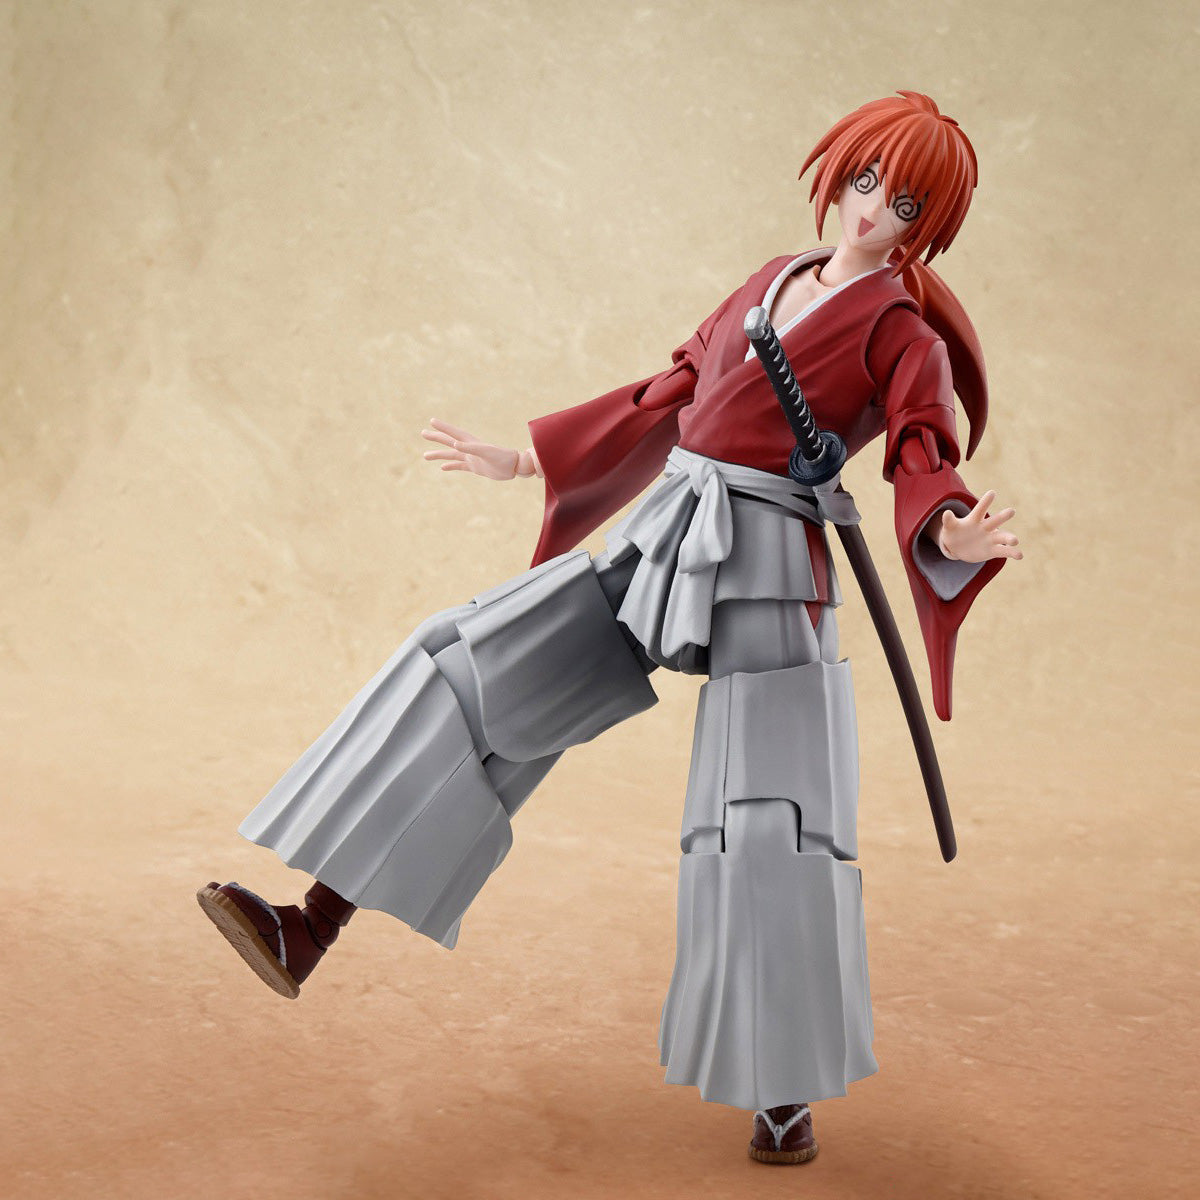 Bandai - S.H.Figuarts - Rurouni Kenshin: Meiji Swordsman Romantic Story - Kenshin Himura - Marvelous Toys